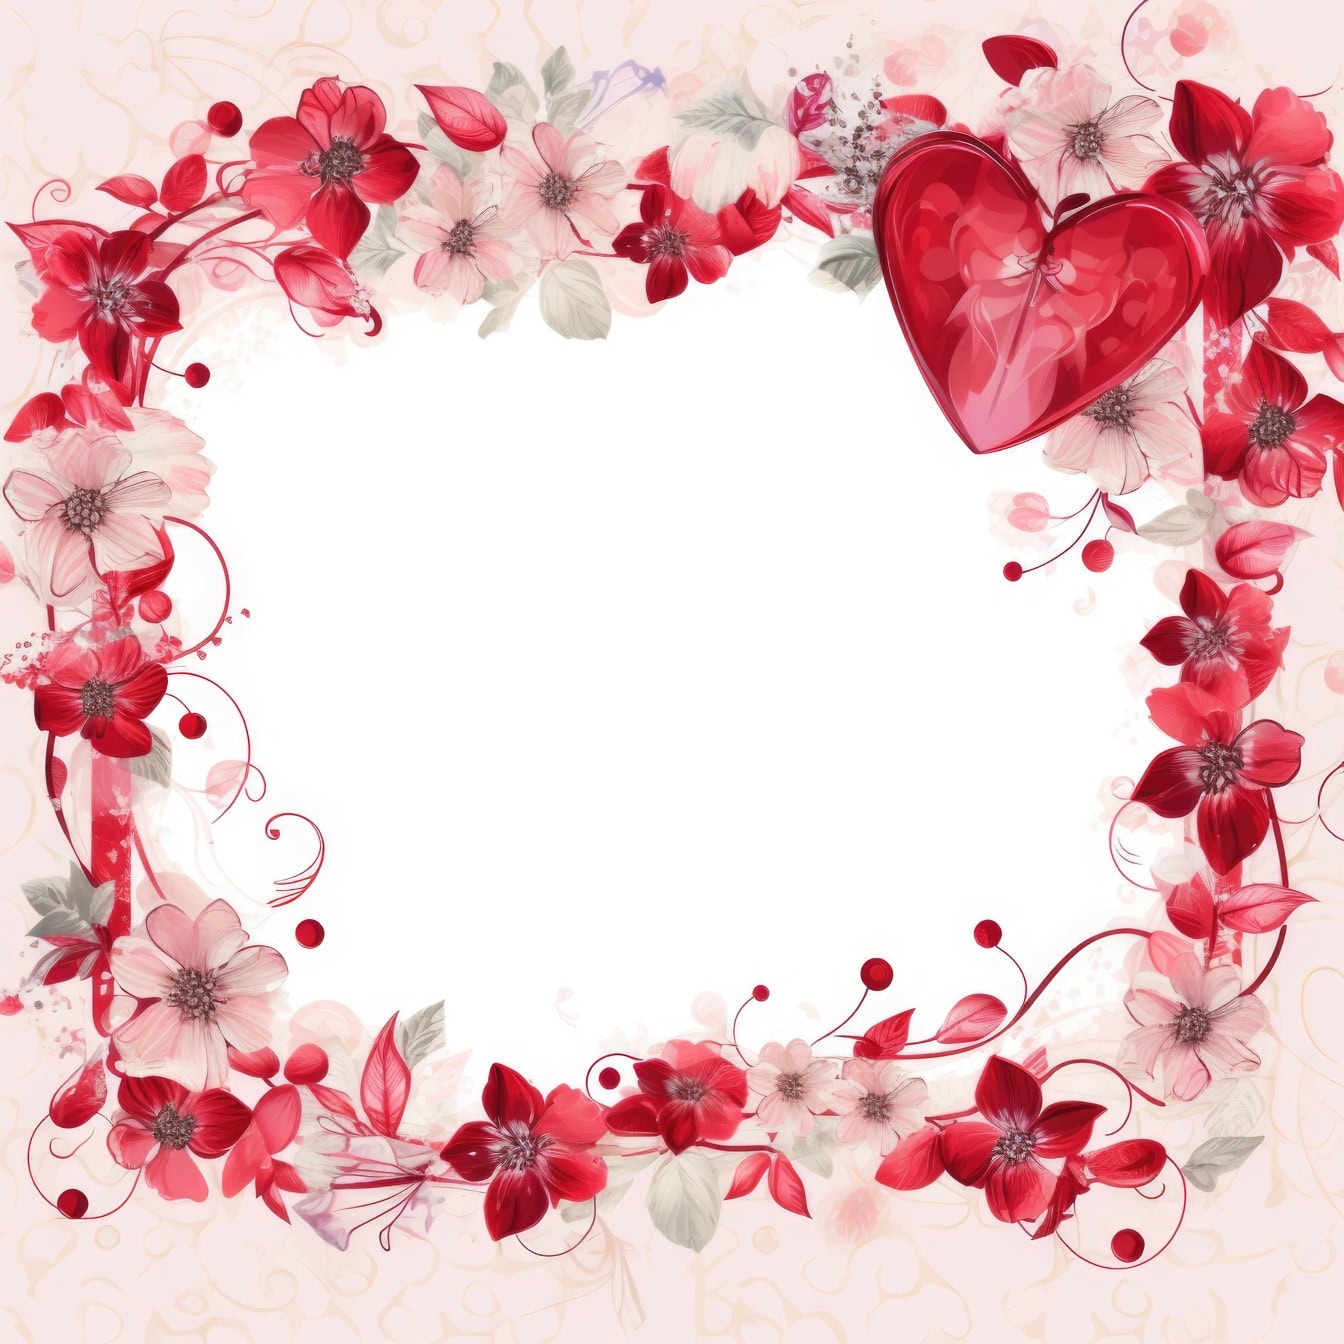 Plantilla de tarjeta de invitación floral romántica del Día de San Valentín con marco de flores y un corazón rojo oscuro